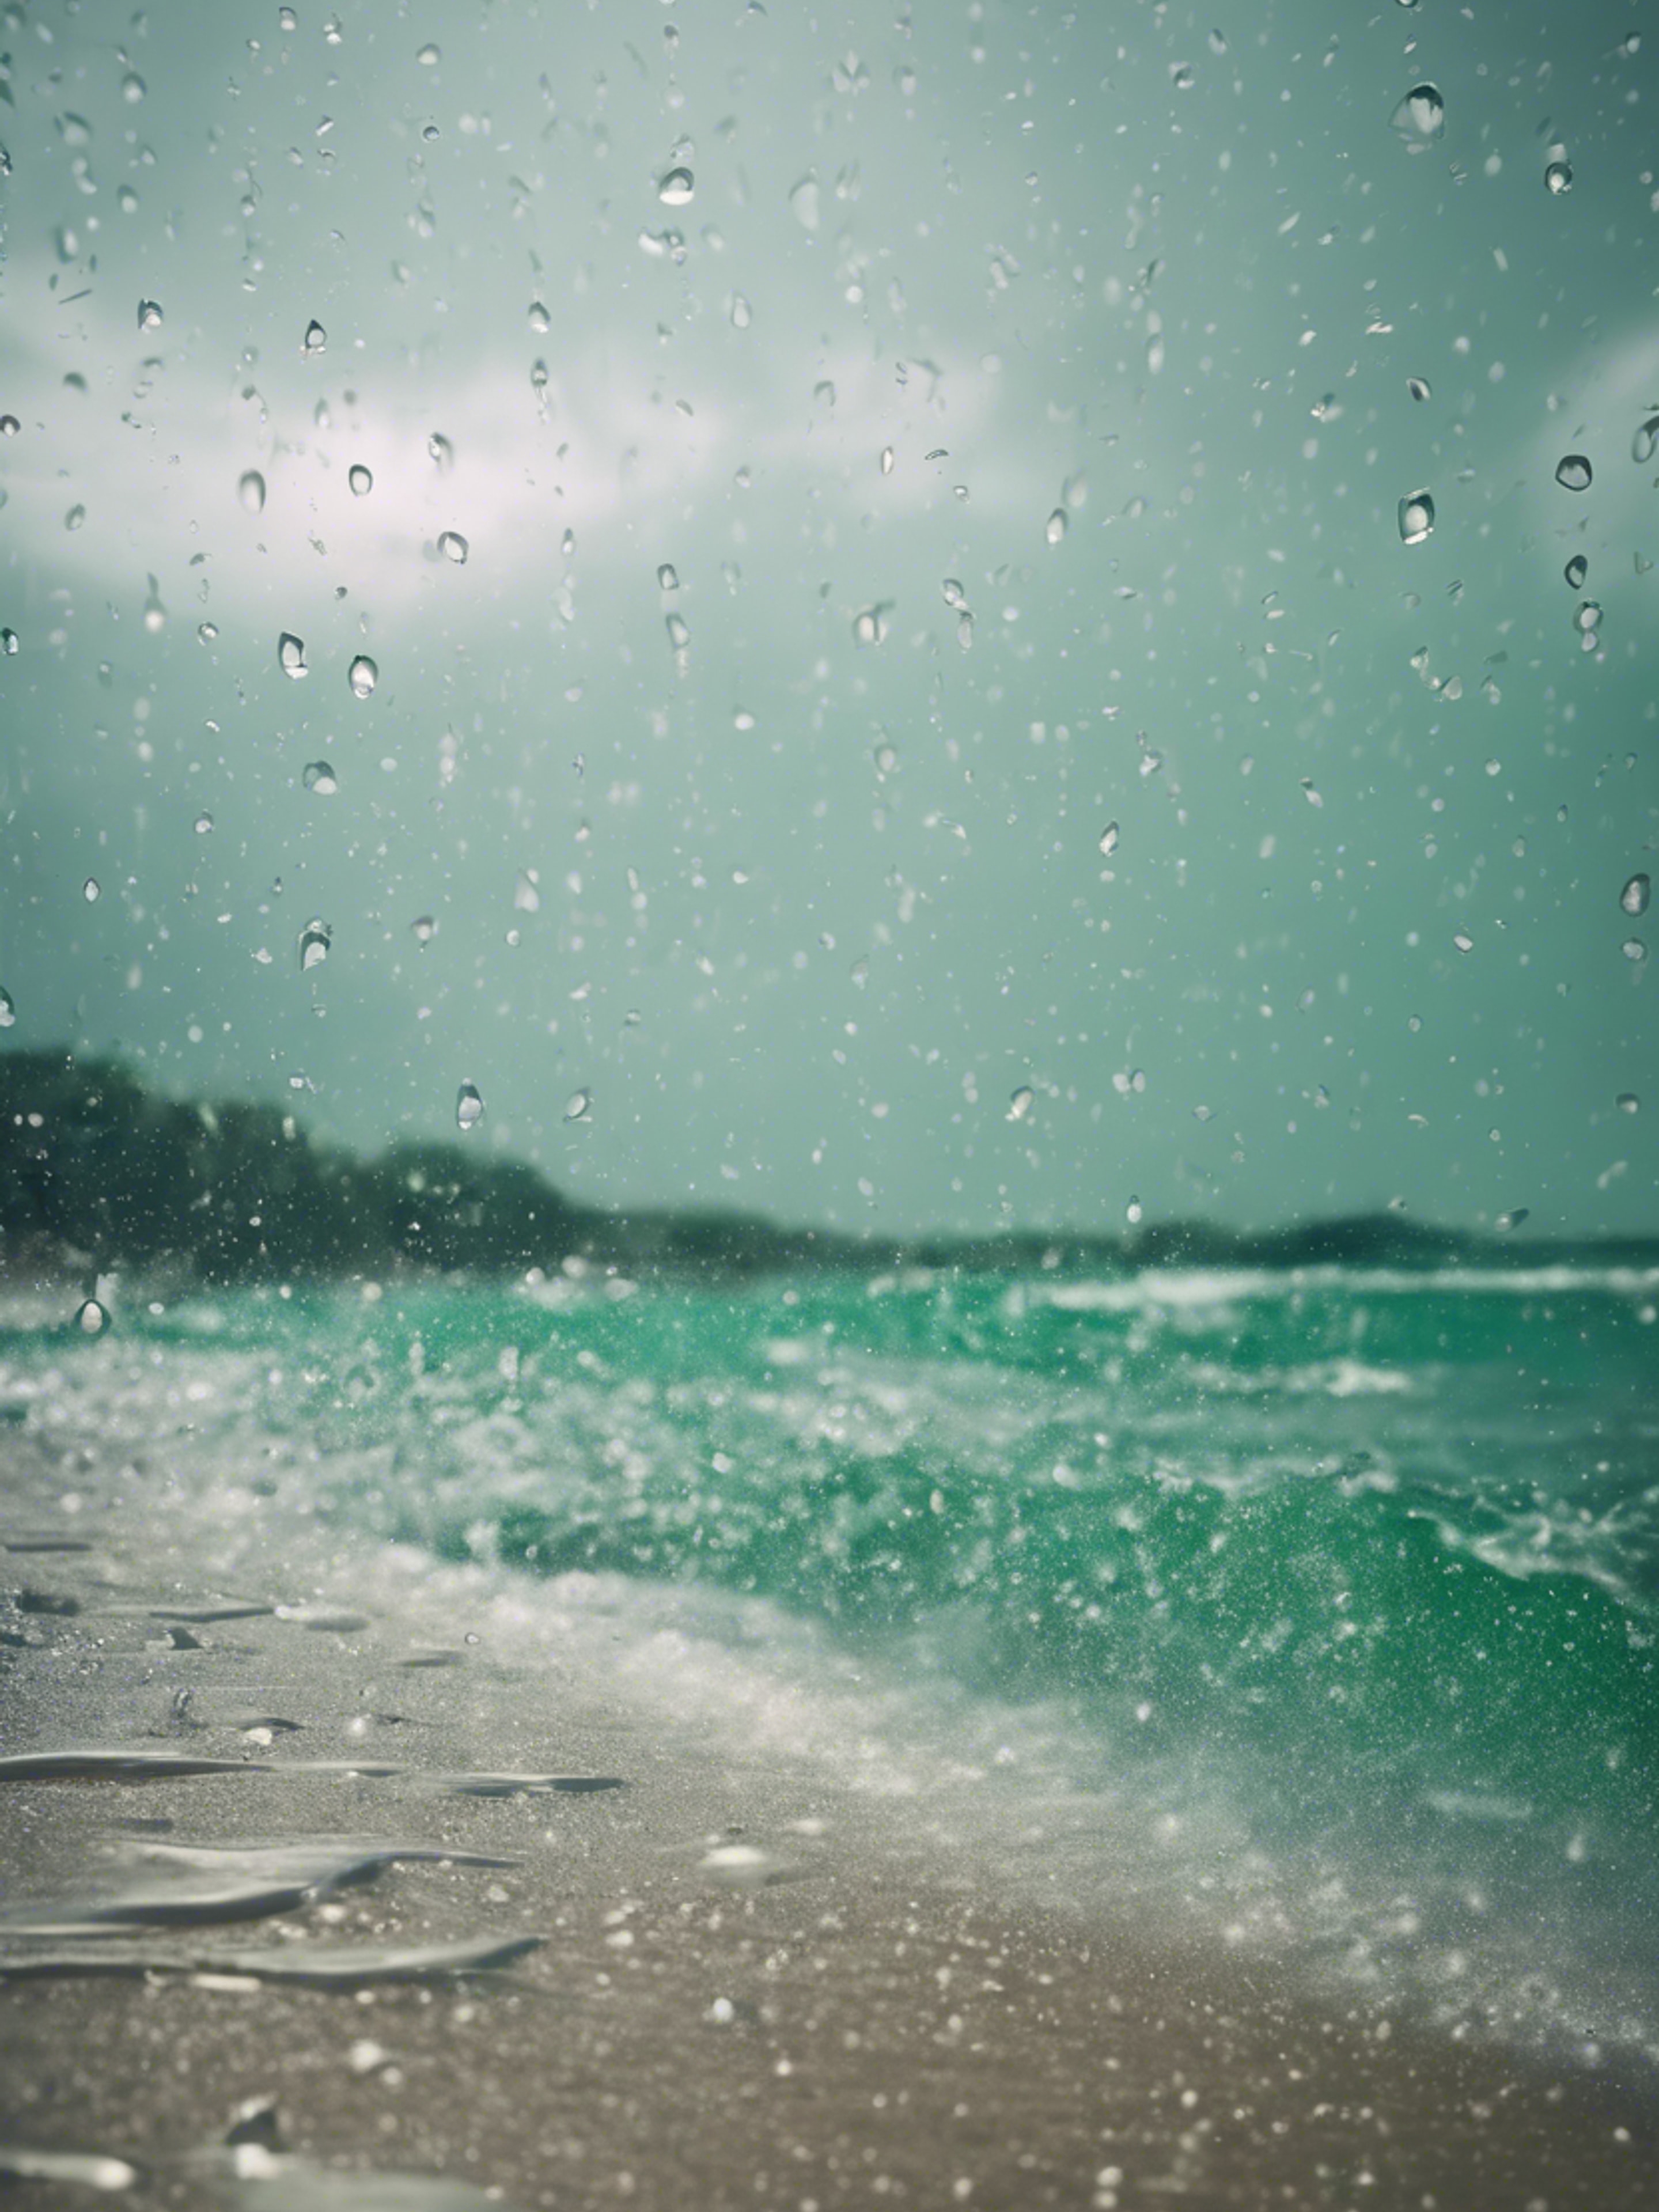 A tropical beach during a heavy downpour, raindrops peppering the emerald ocean surface. Tapetai[12d3e55d32da4f6db703]